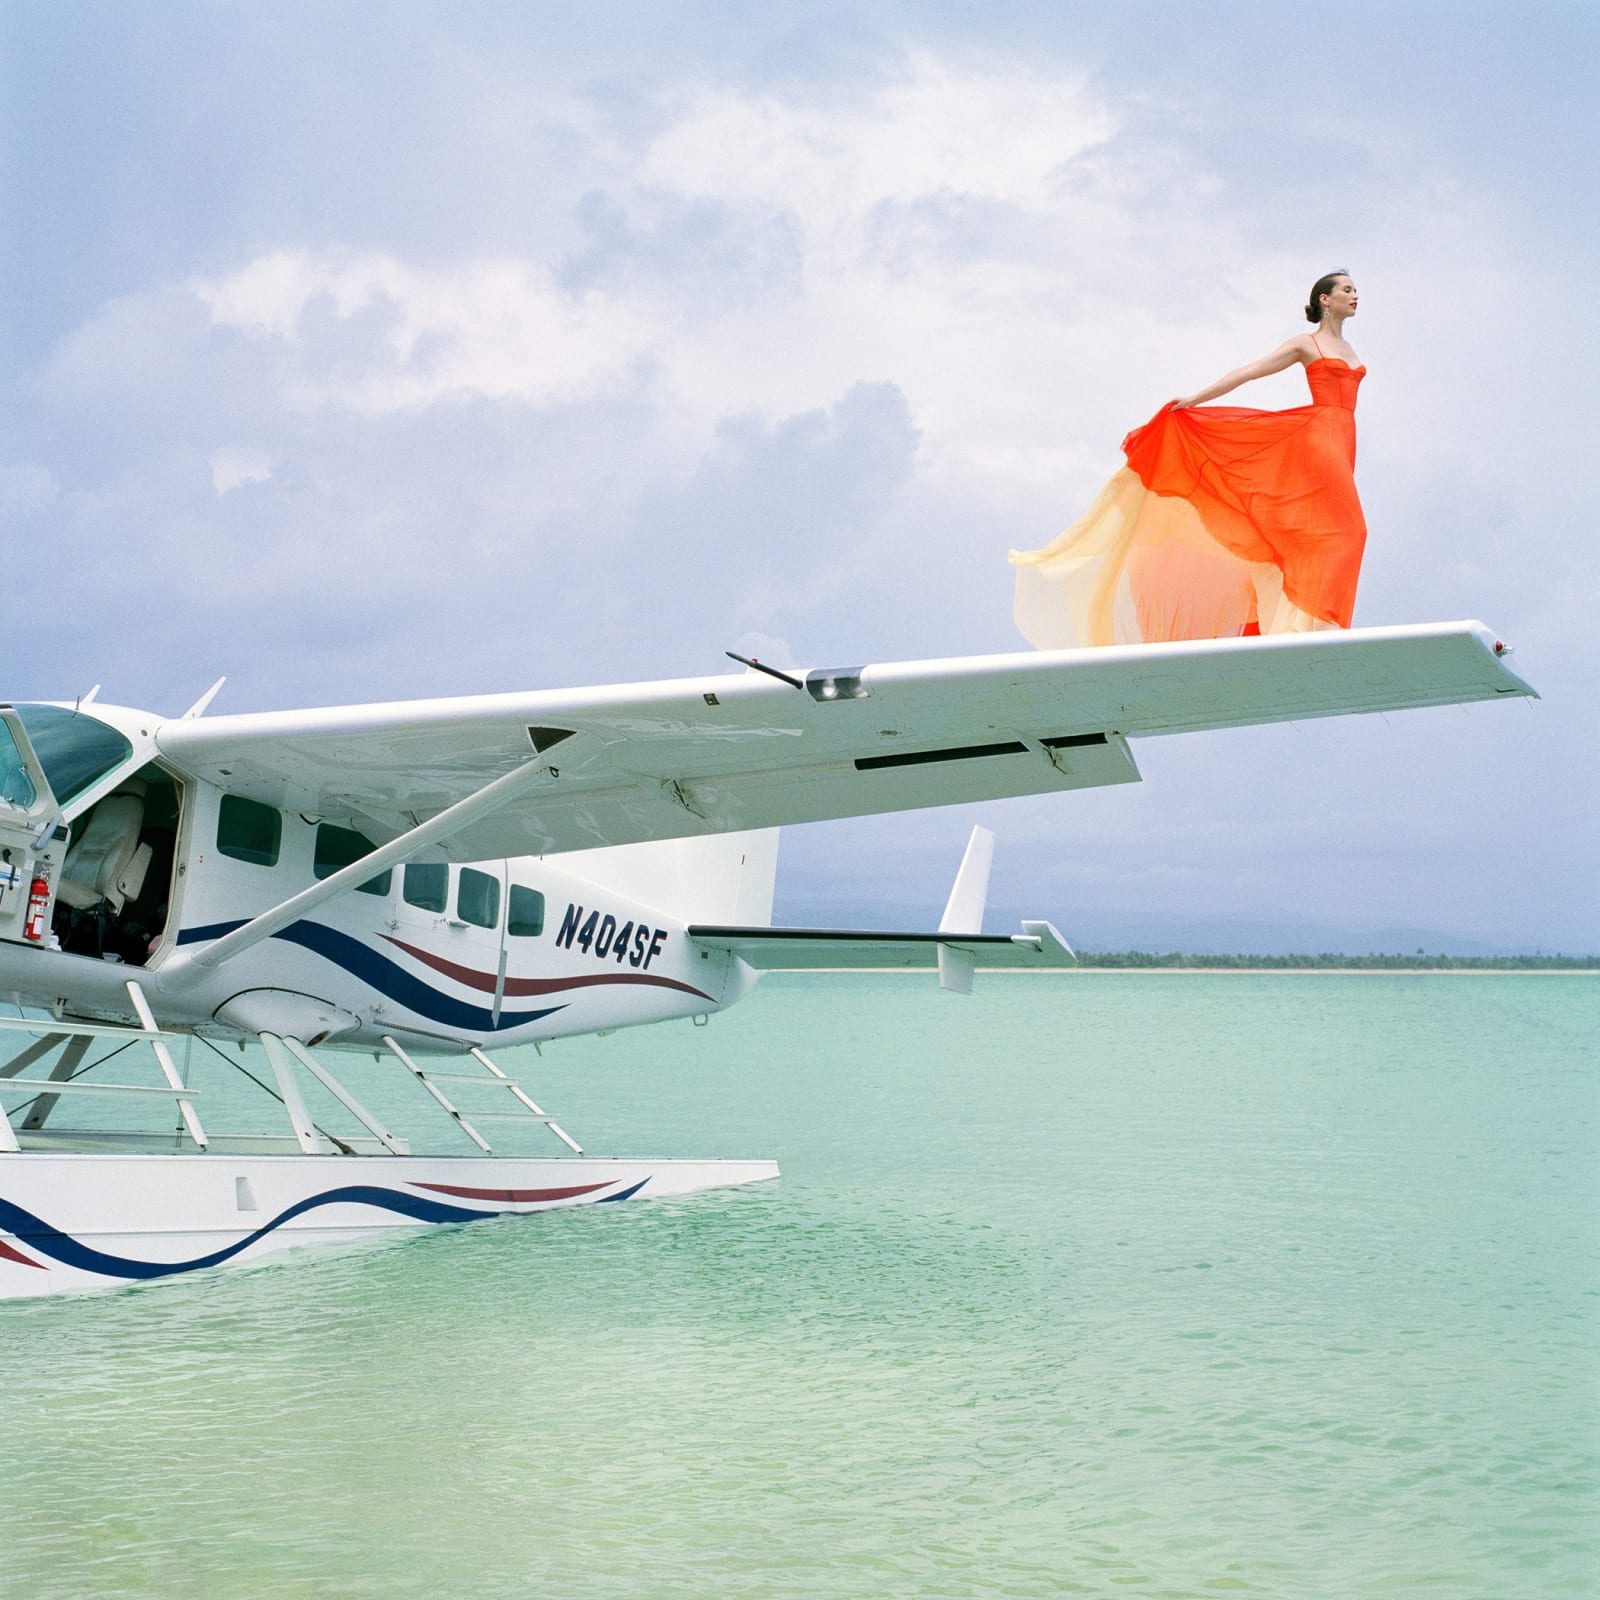 Rodney Smith, Saori on Seaplane Wing, Dominican Republic (B), 2009